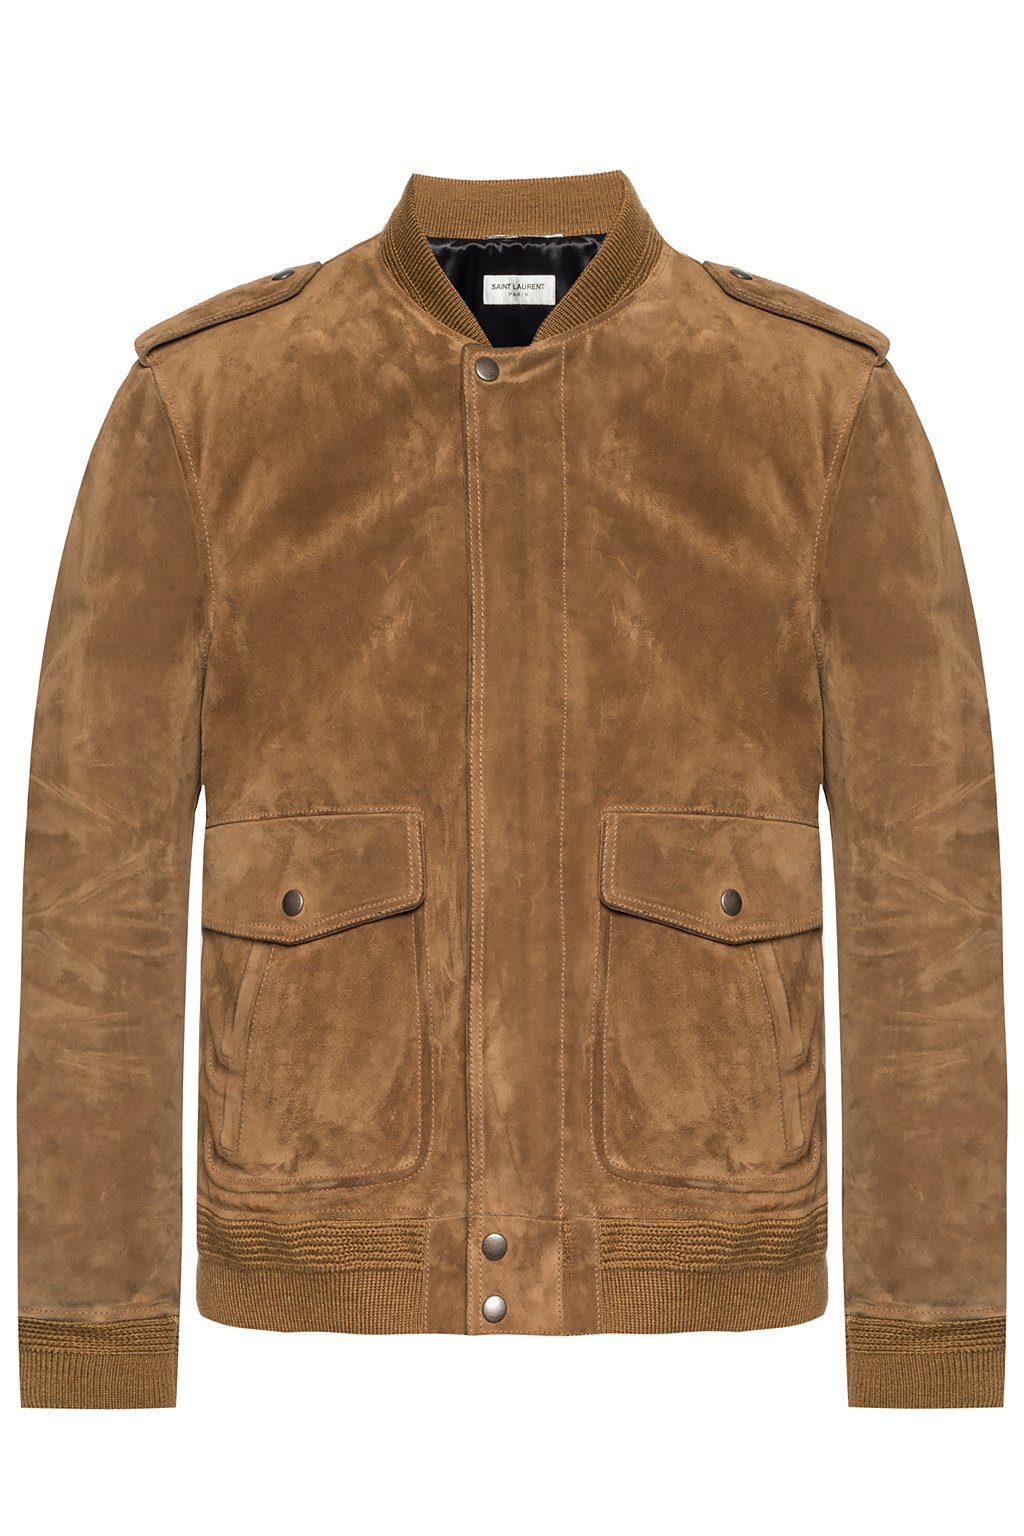 Saint Laurent Suede jacket | Men's Clothing | Vitkac